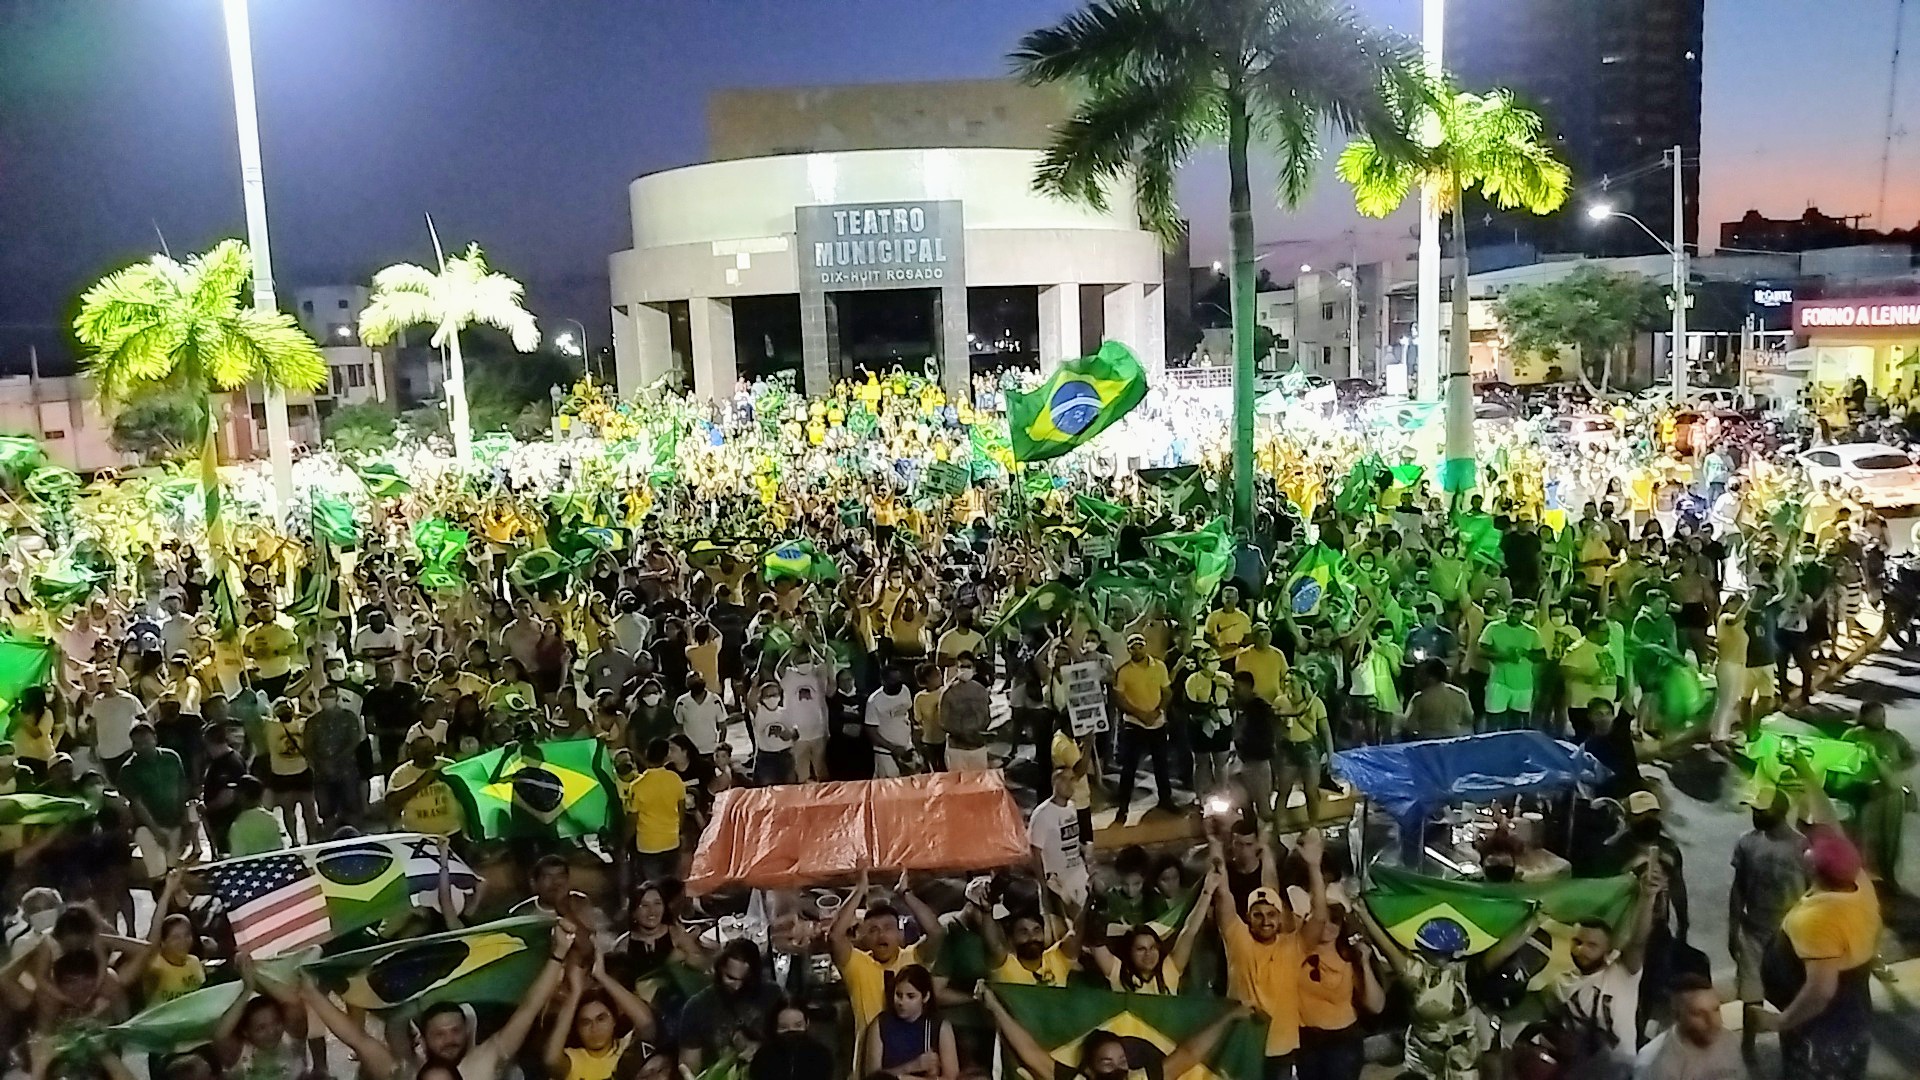 VÍDEO: Praça fica lotada para ato pró-Bolsonaro em Mossoró; assista